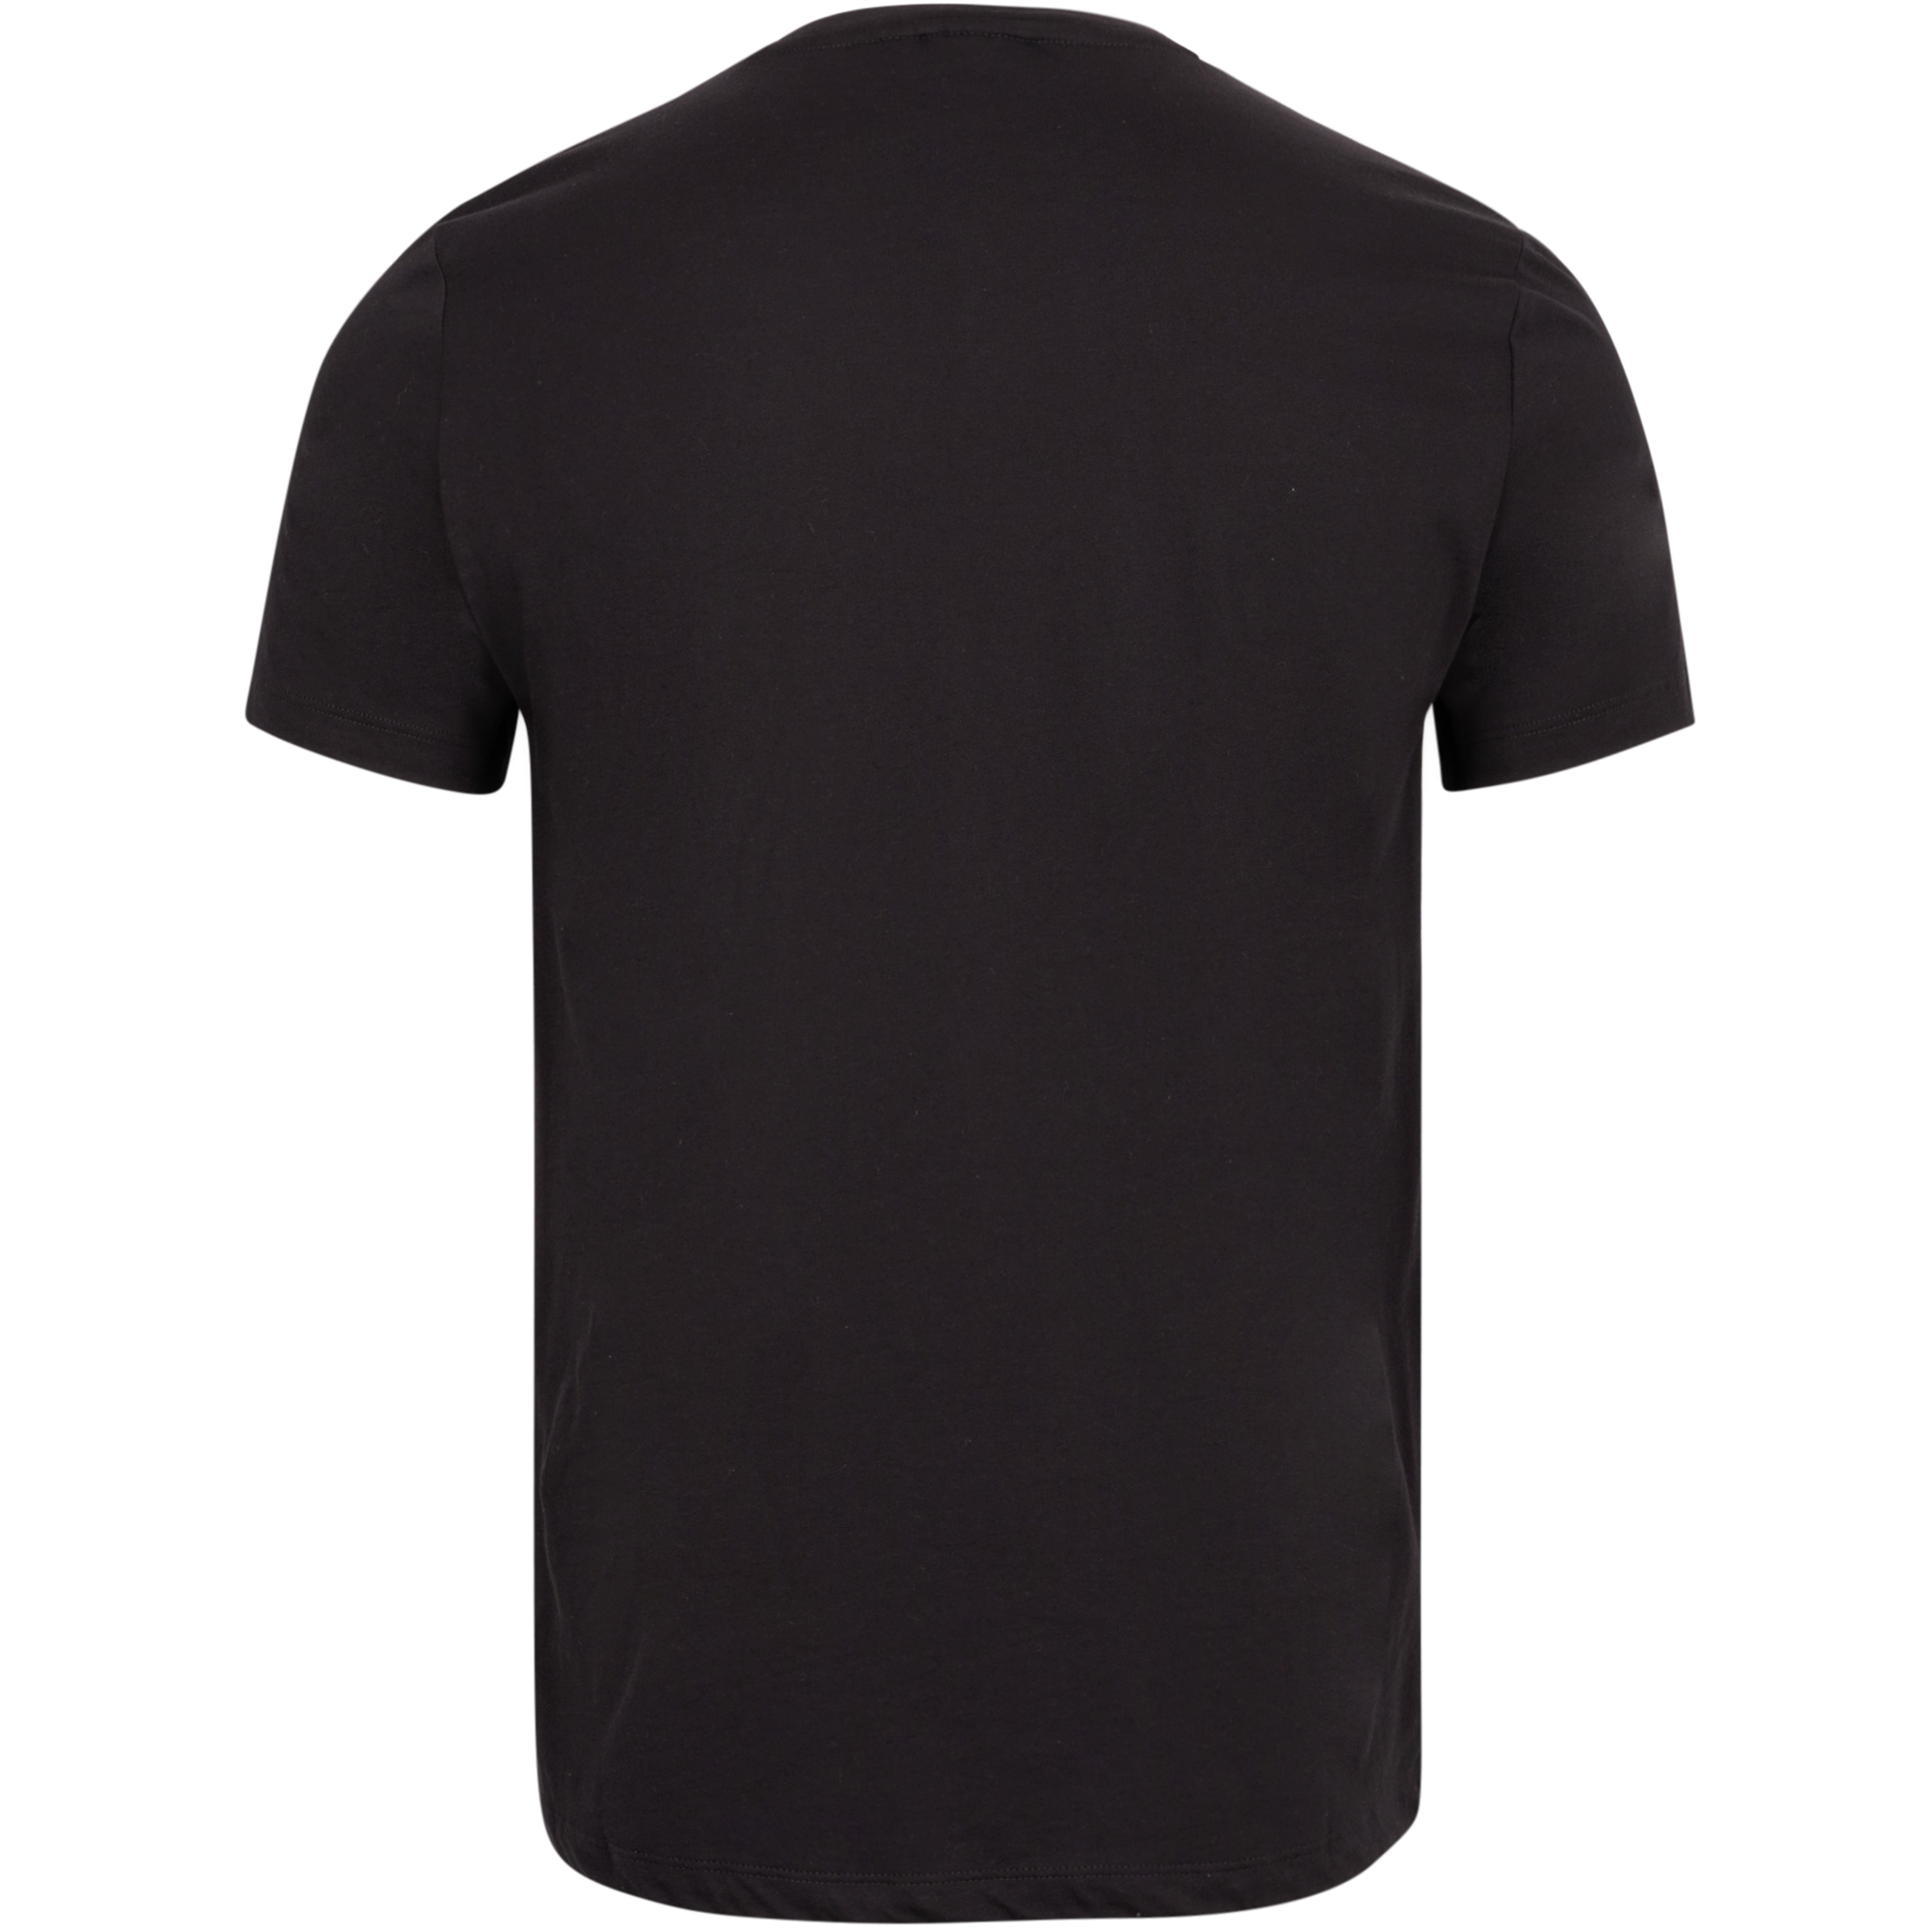 Centre T-Shirt - Black Beauty